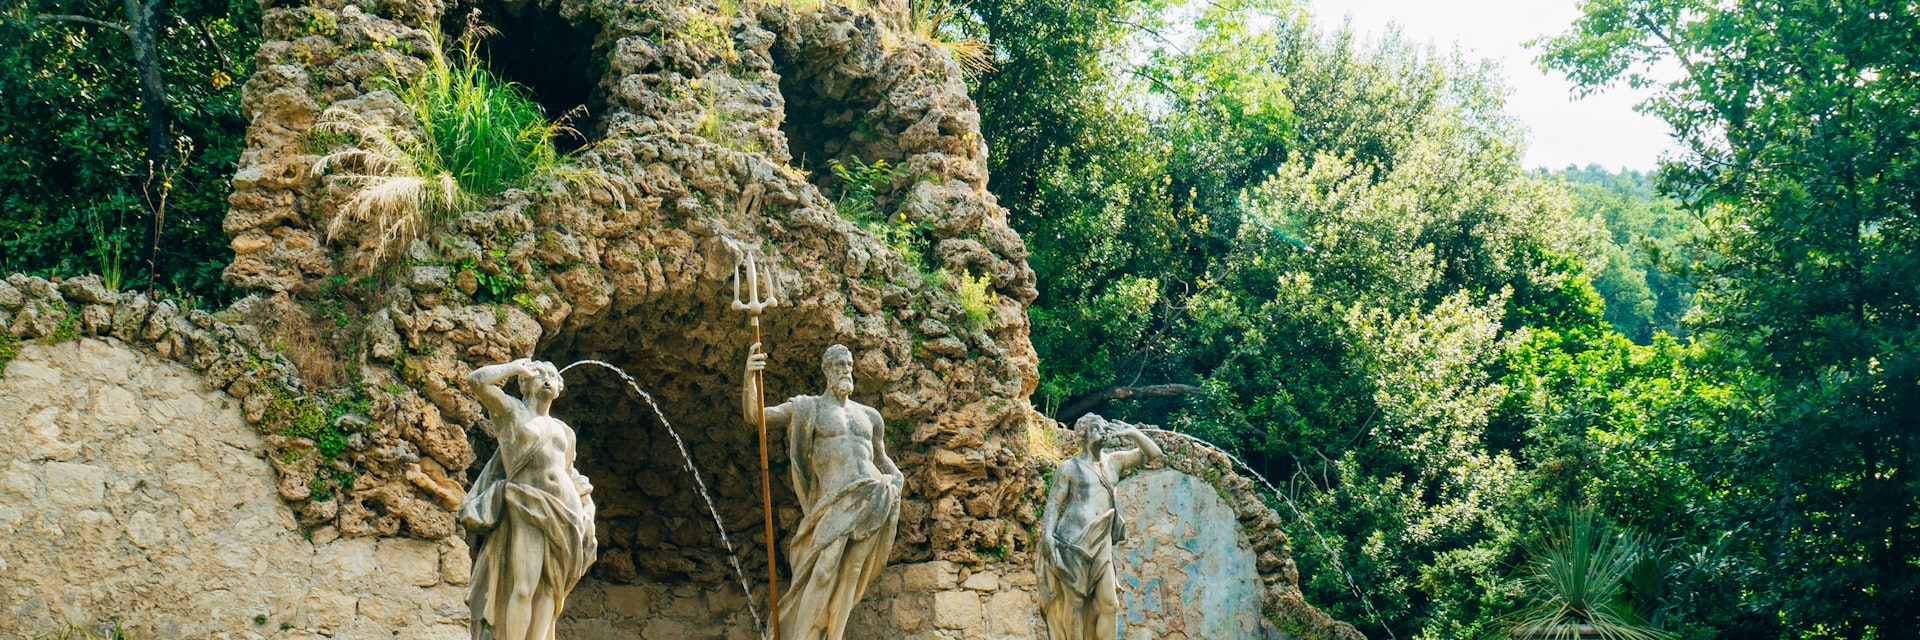 Fountain Neptune at the Trsteno Arboretum.